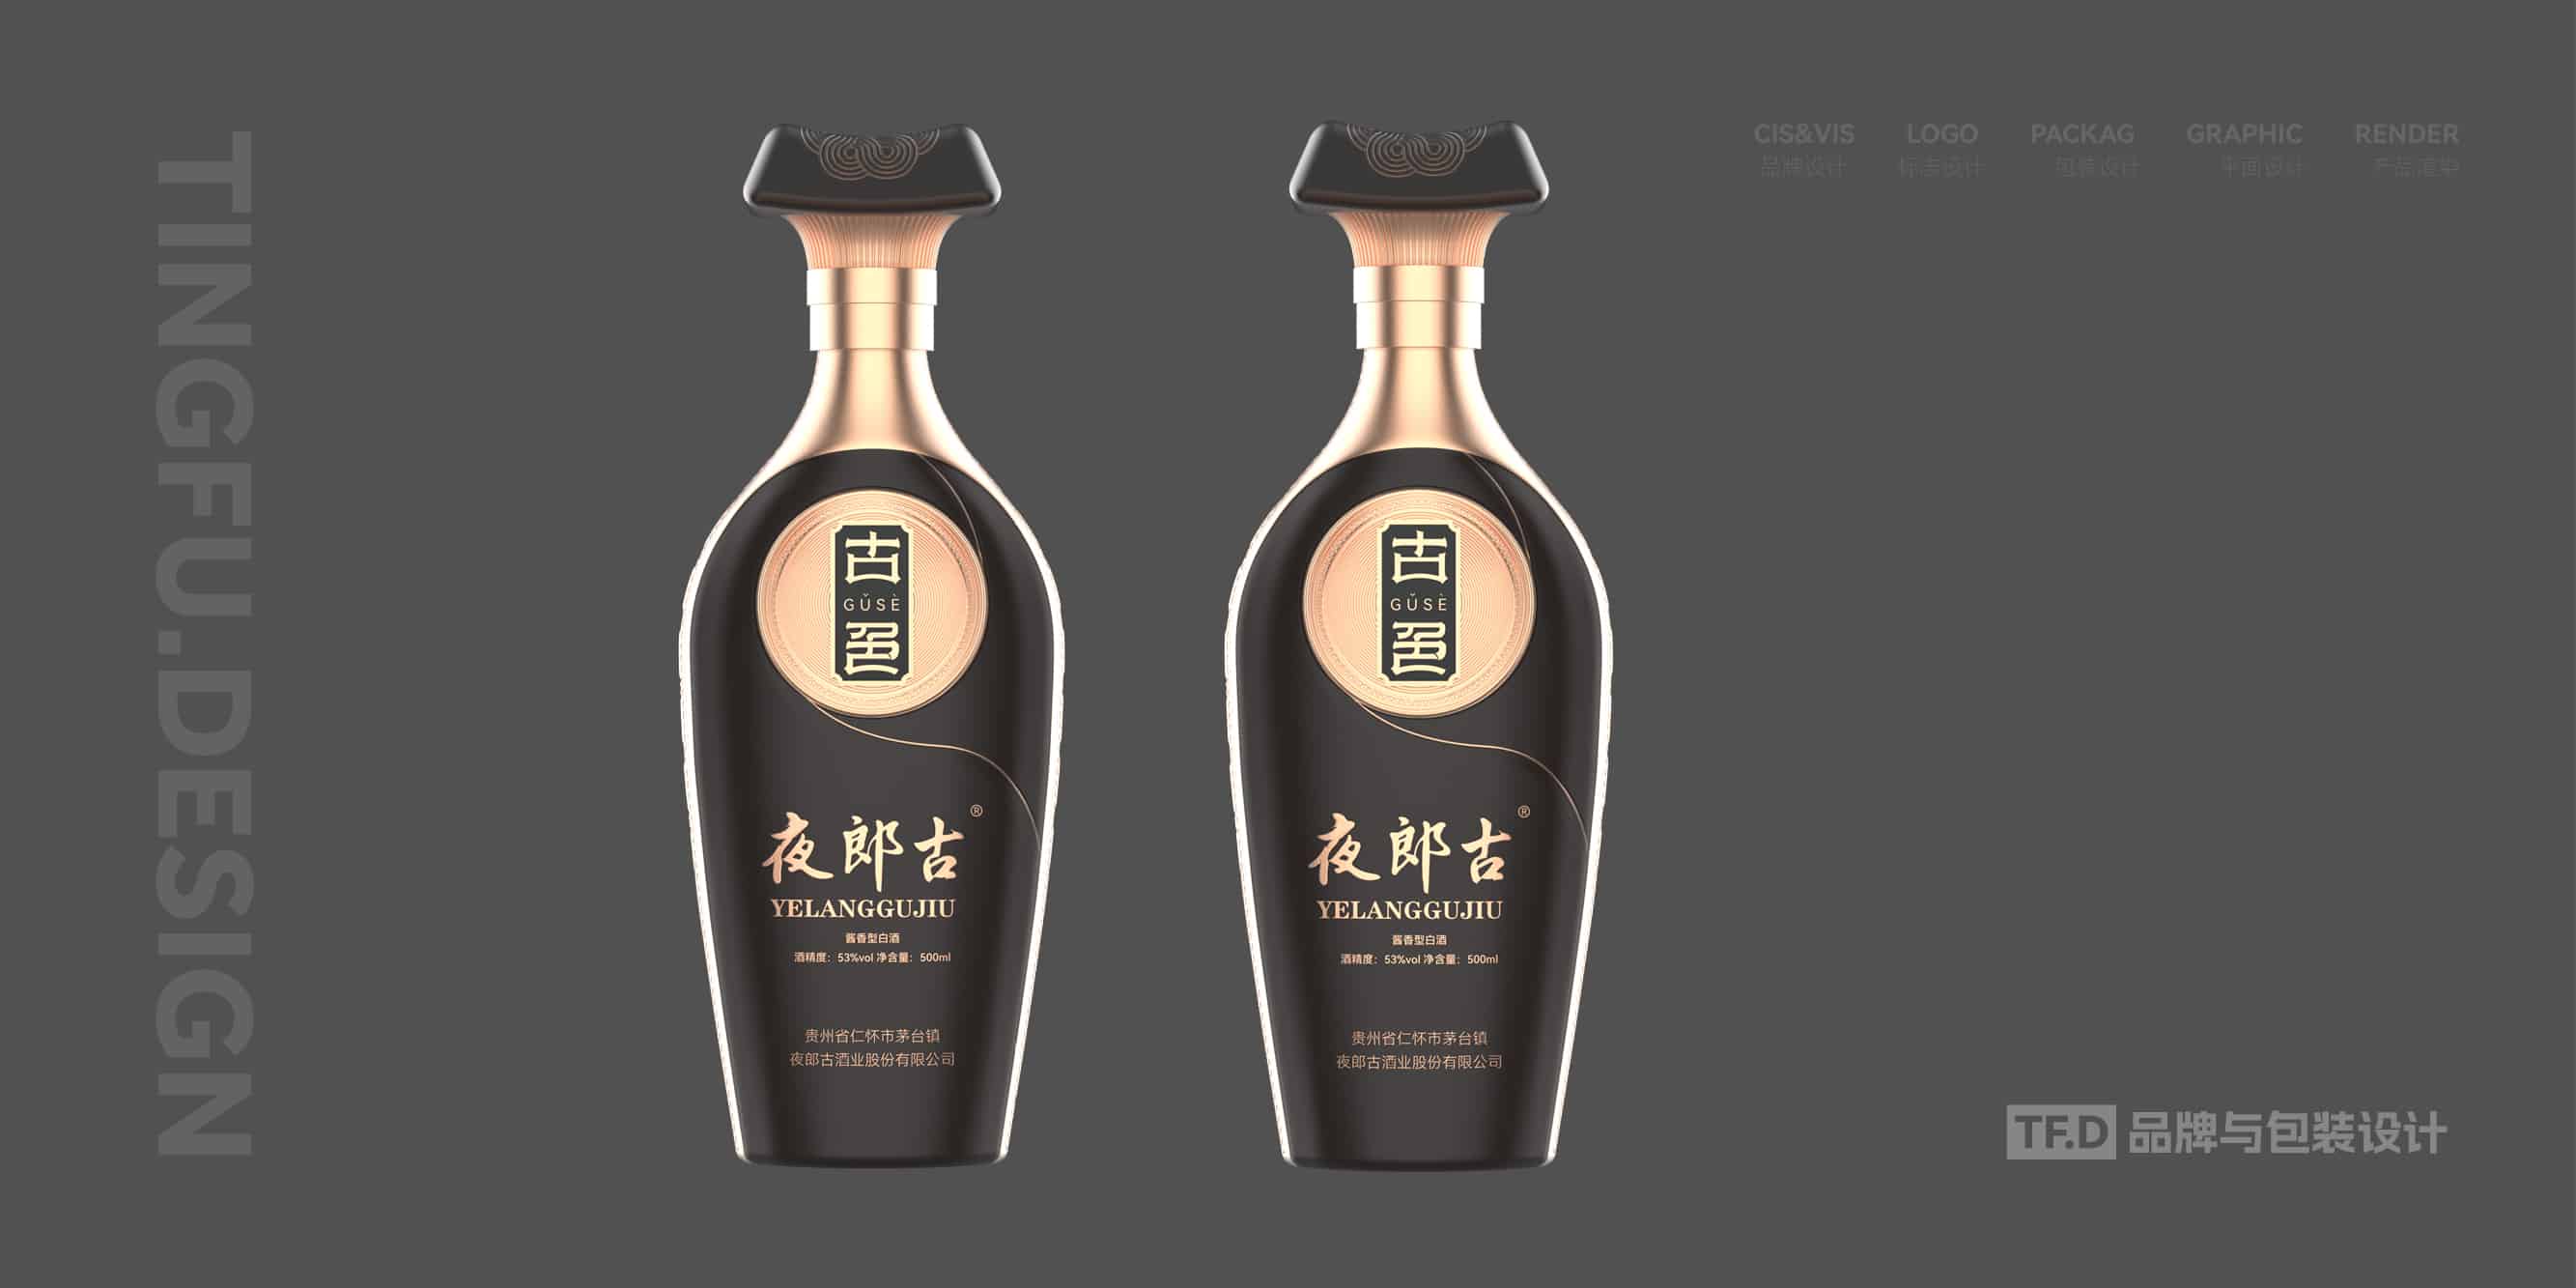 TFD品牌与包装设计-部分酒包装设计案例43-tuya.jpg